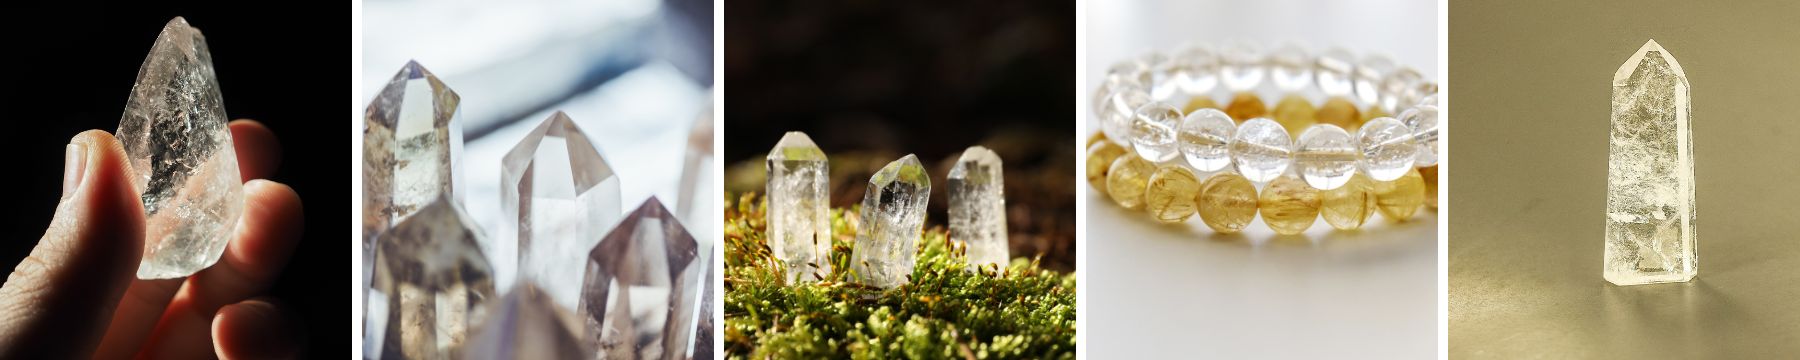 cristales para el solsticio de verano - cuarzo transparente